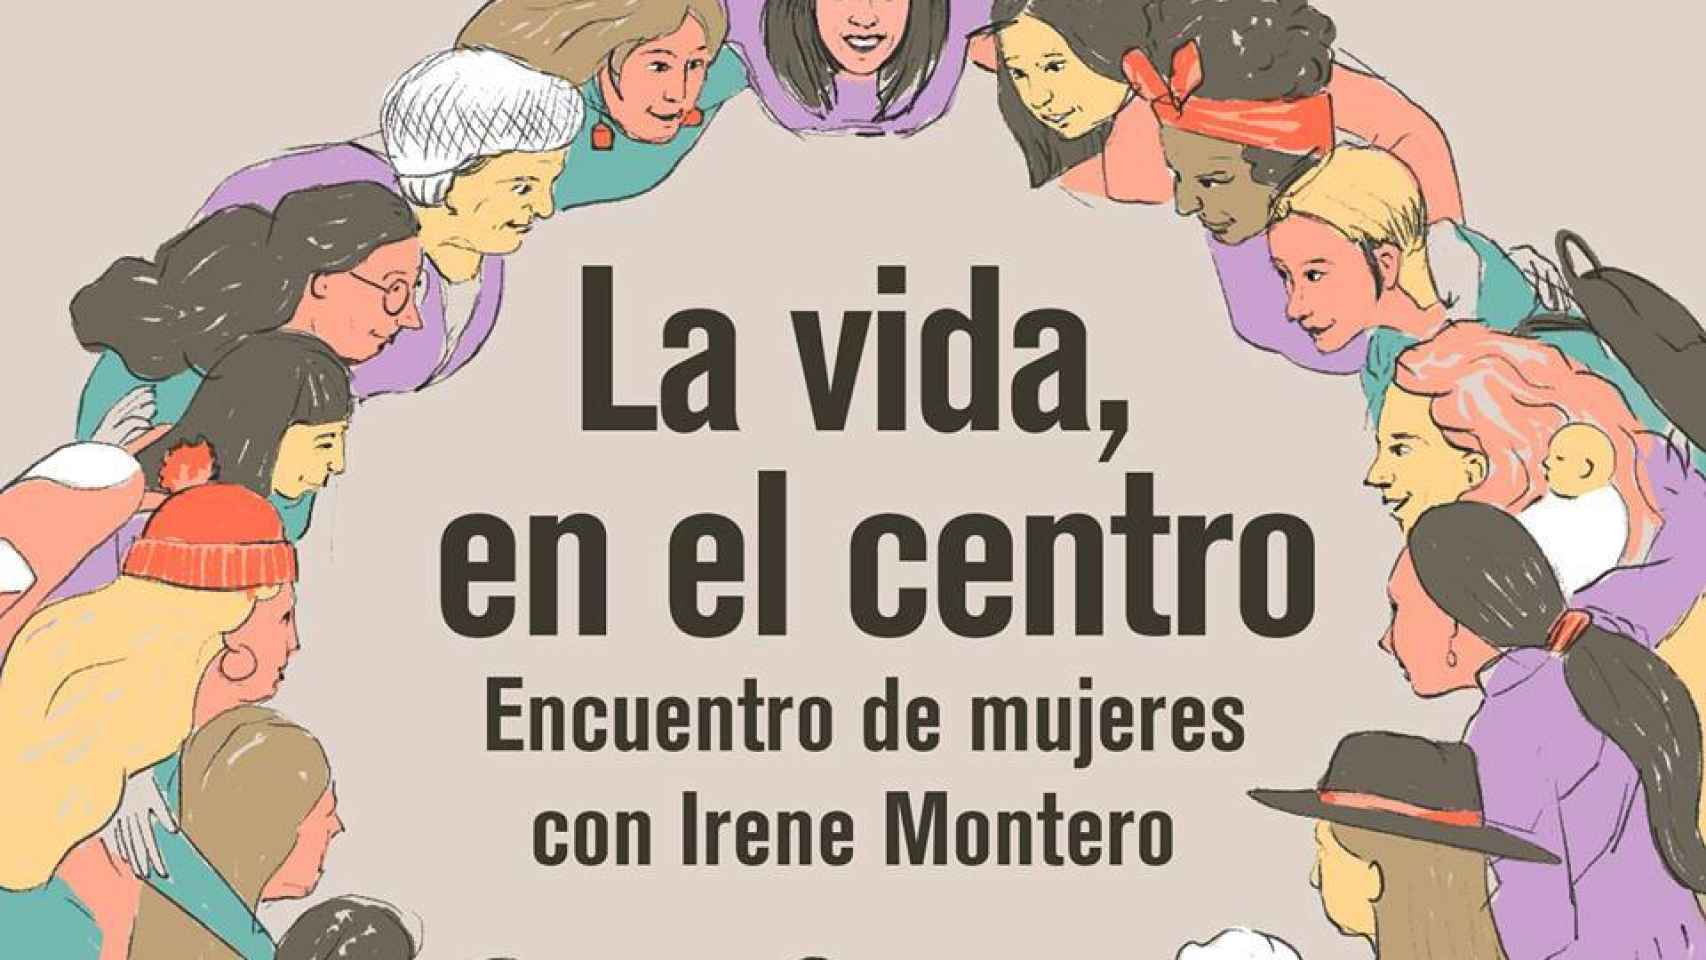 Cartel del acto feminista con el que regresaba Irene Montero a la vida política tras su baja de maternidad.